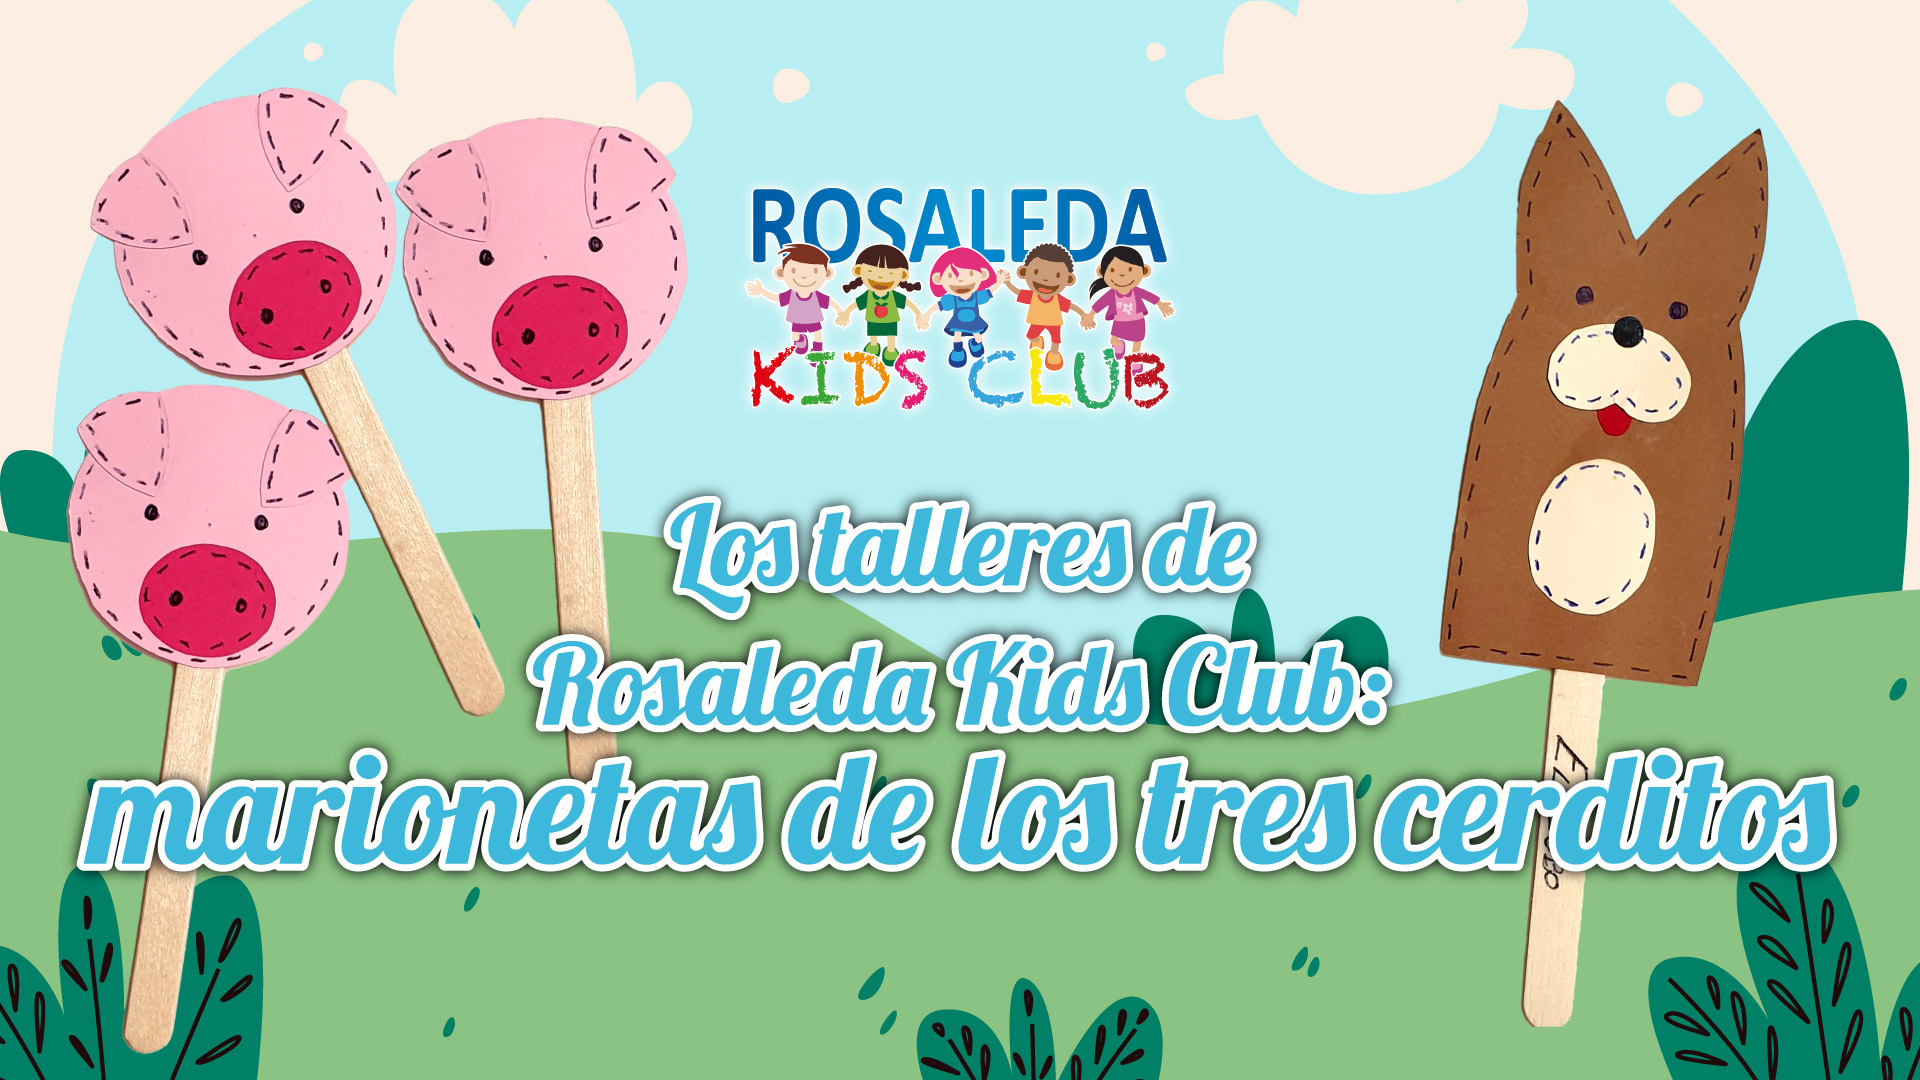 Rosaleda Kids Club: marionetas de los tres cerditos